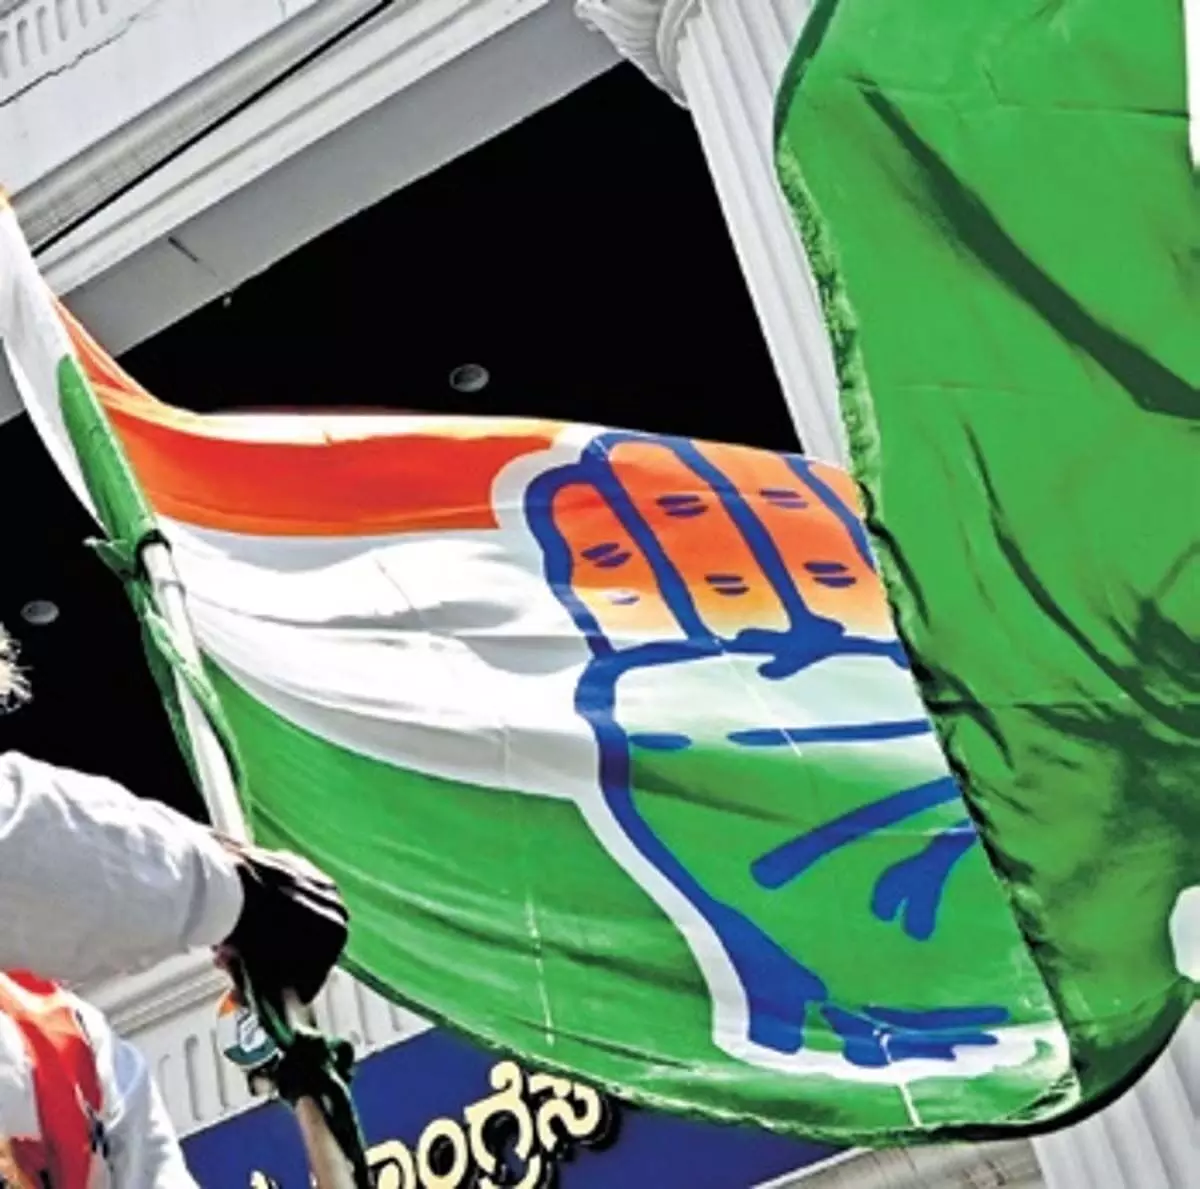 कर्नाटक में 13-14 सीटों पर उम्मीदवारों के लिए अच्छा फीडबैक: कांग्रेस नेता